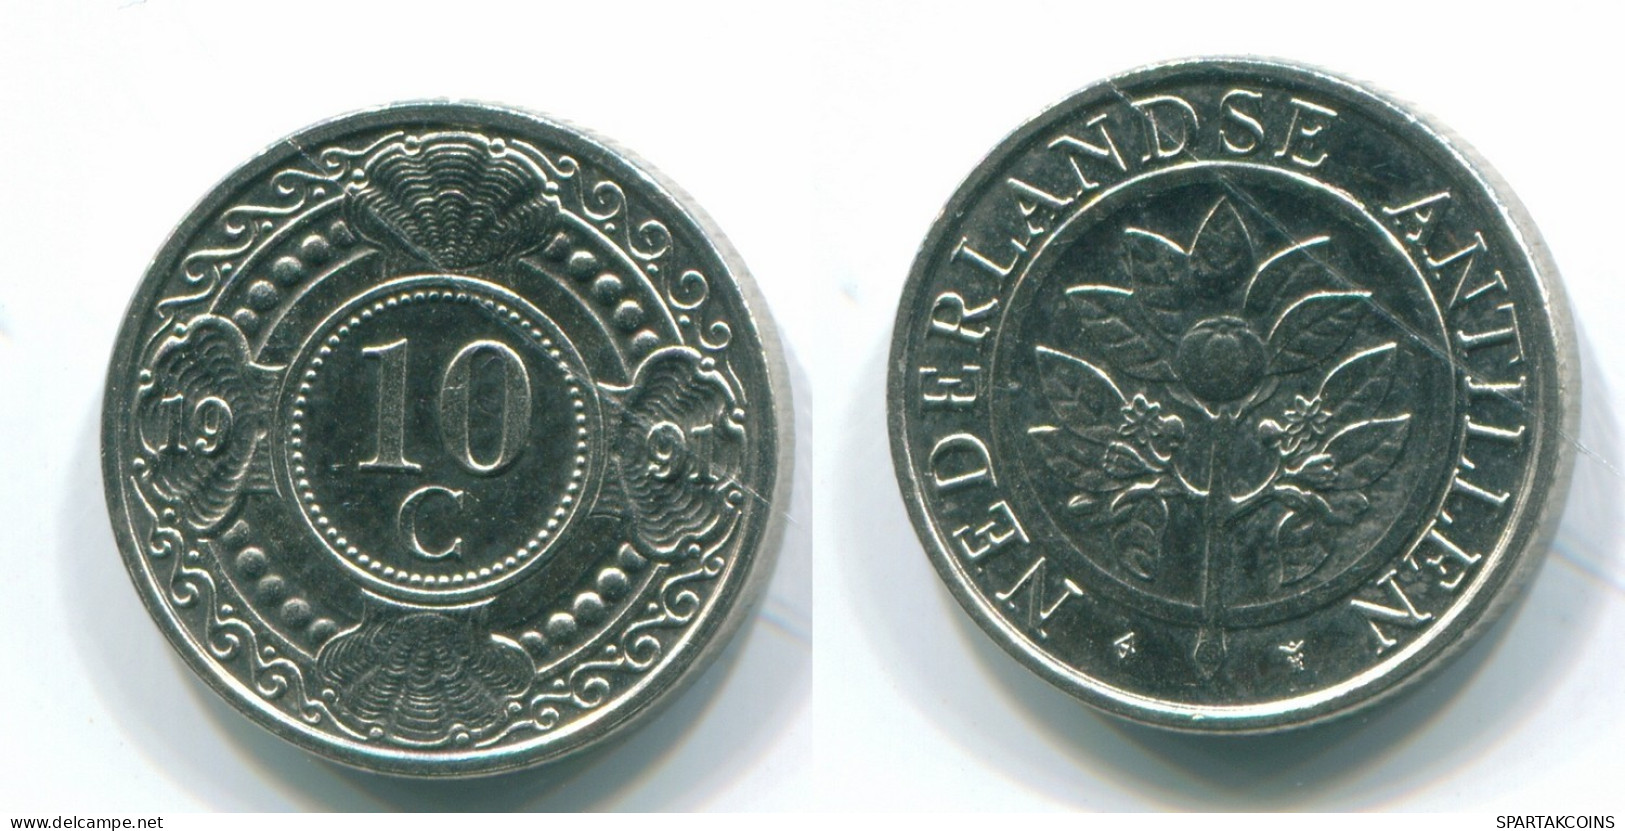 10 CENTS 1991 ANTILLES NÉERLANDAISES Nickel Colonial Pièce #S11327.F.A - Antillas Neerlandesas